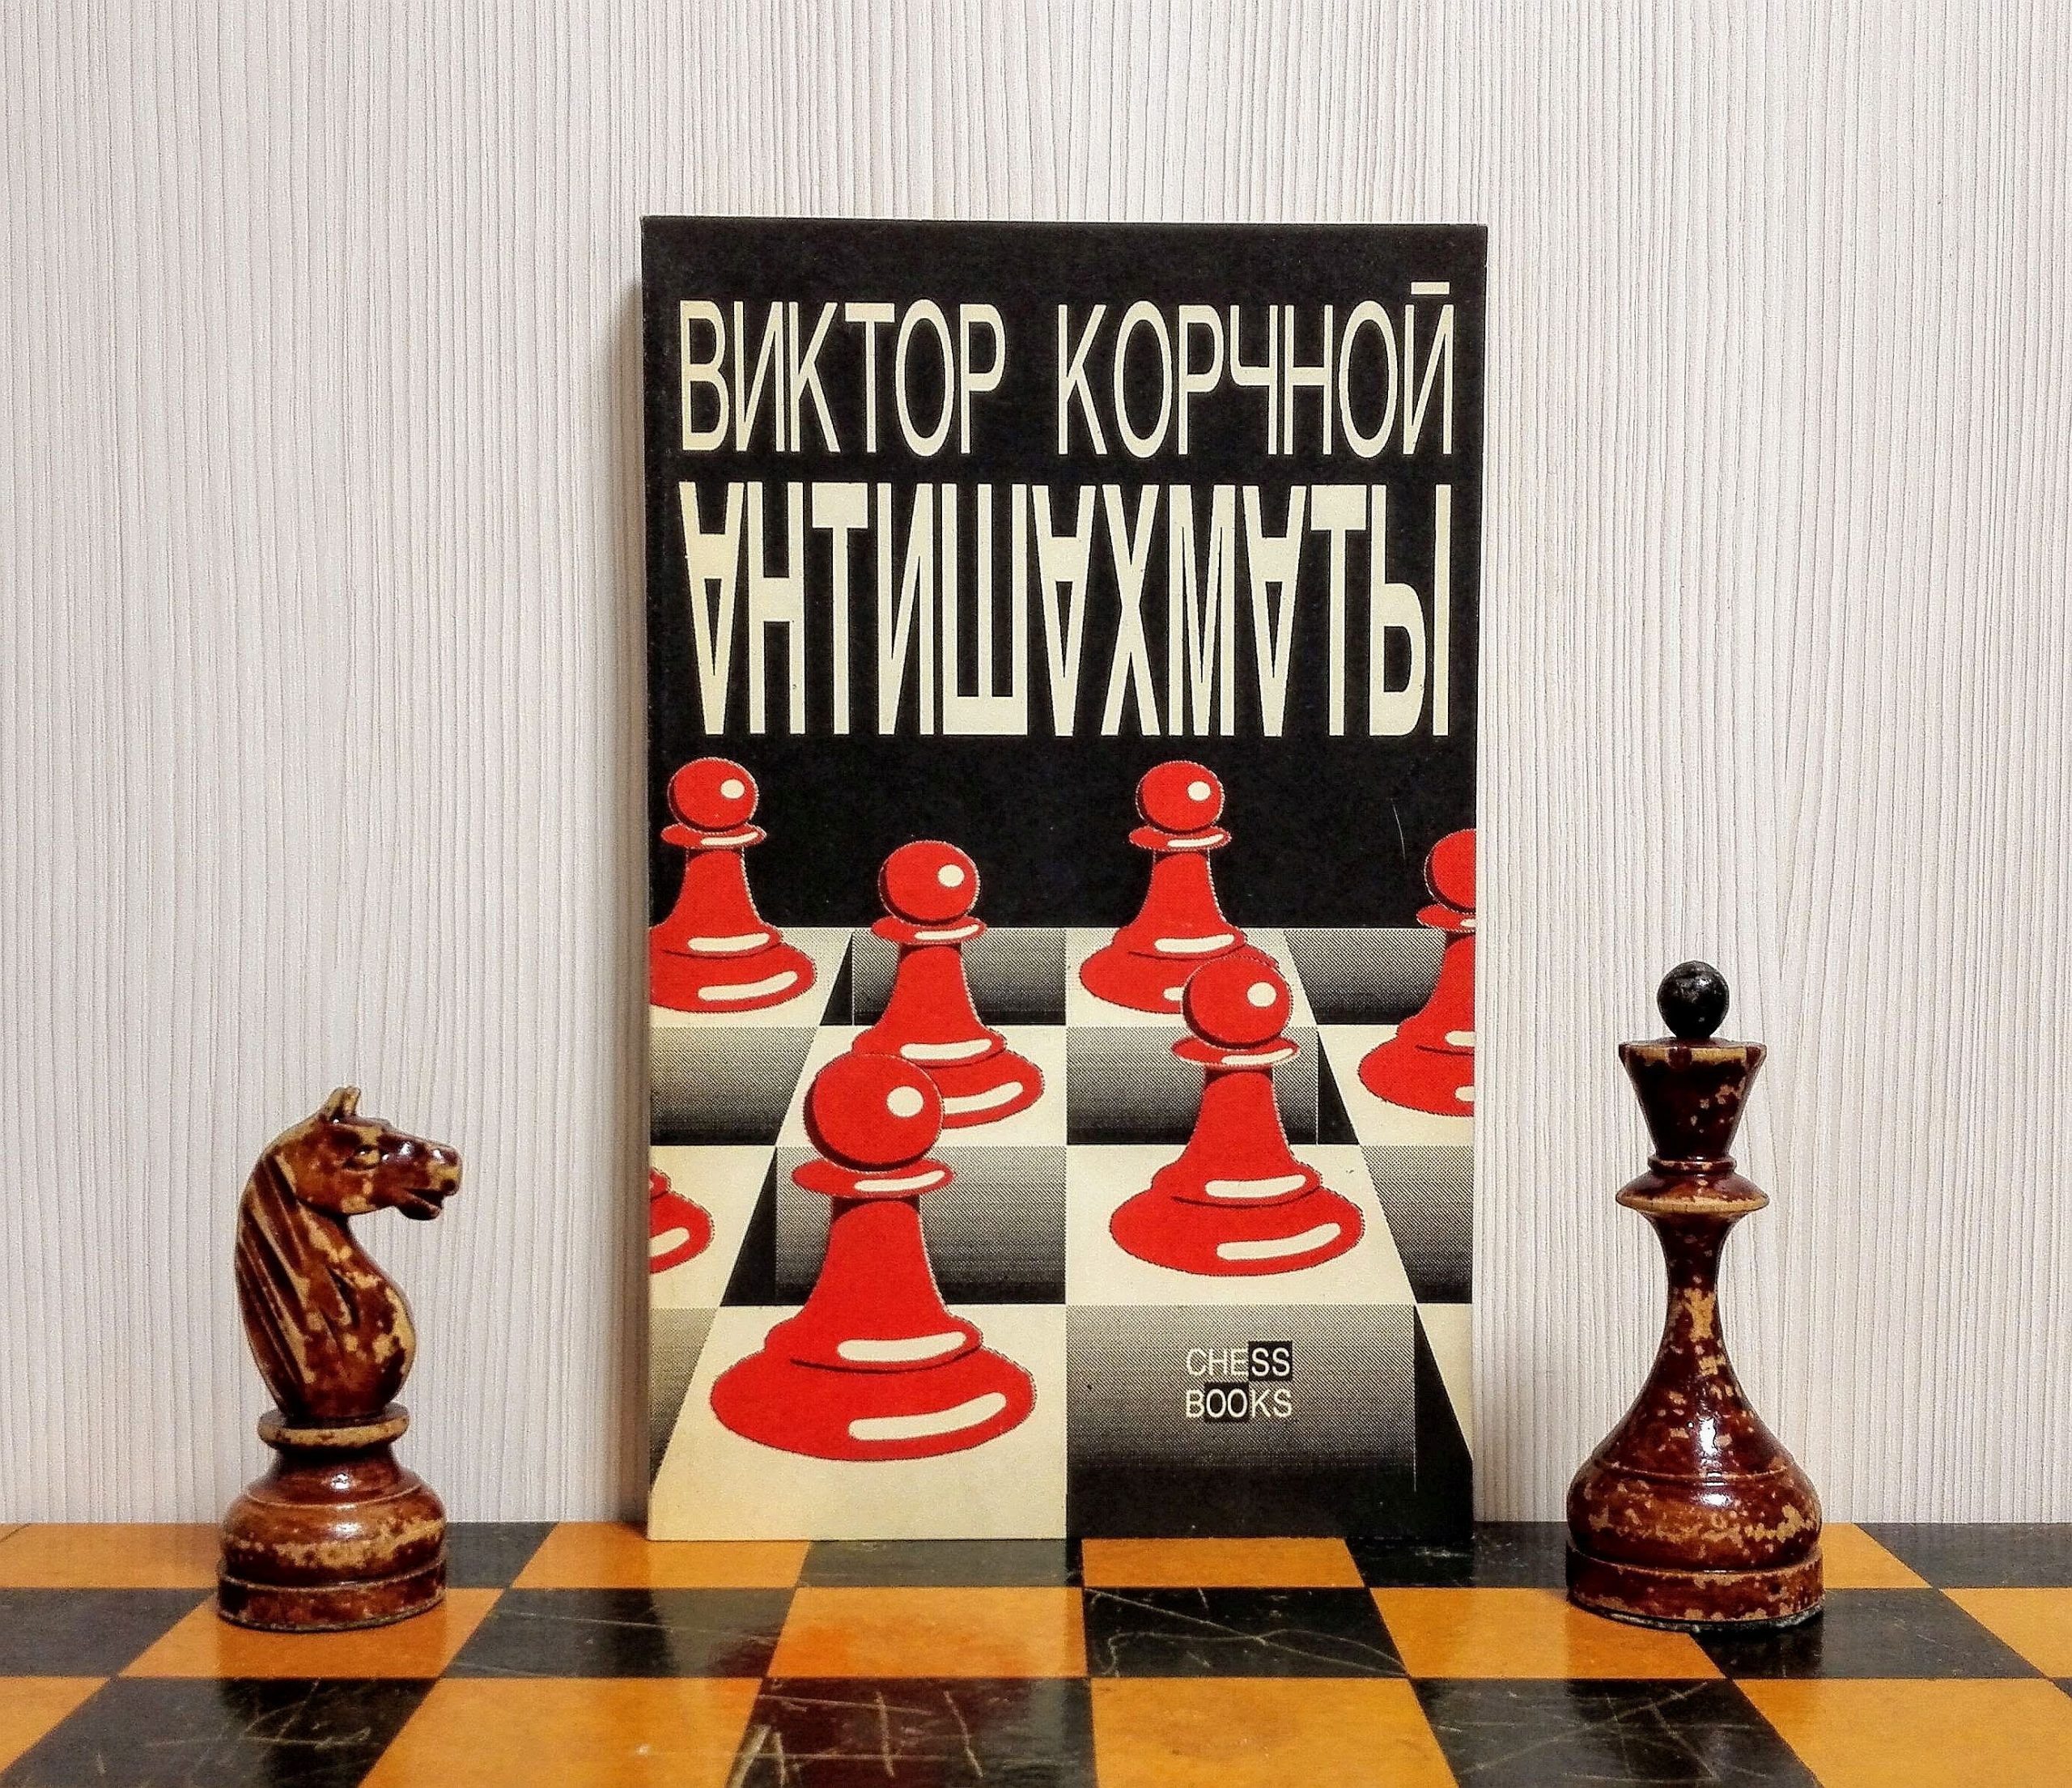 Karpov-Korchnoi: 40 years after